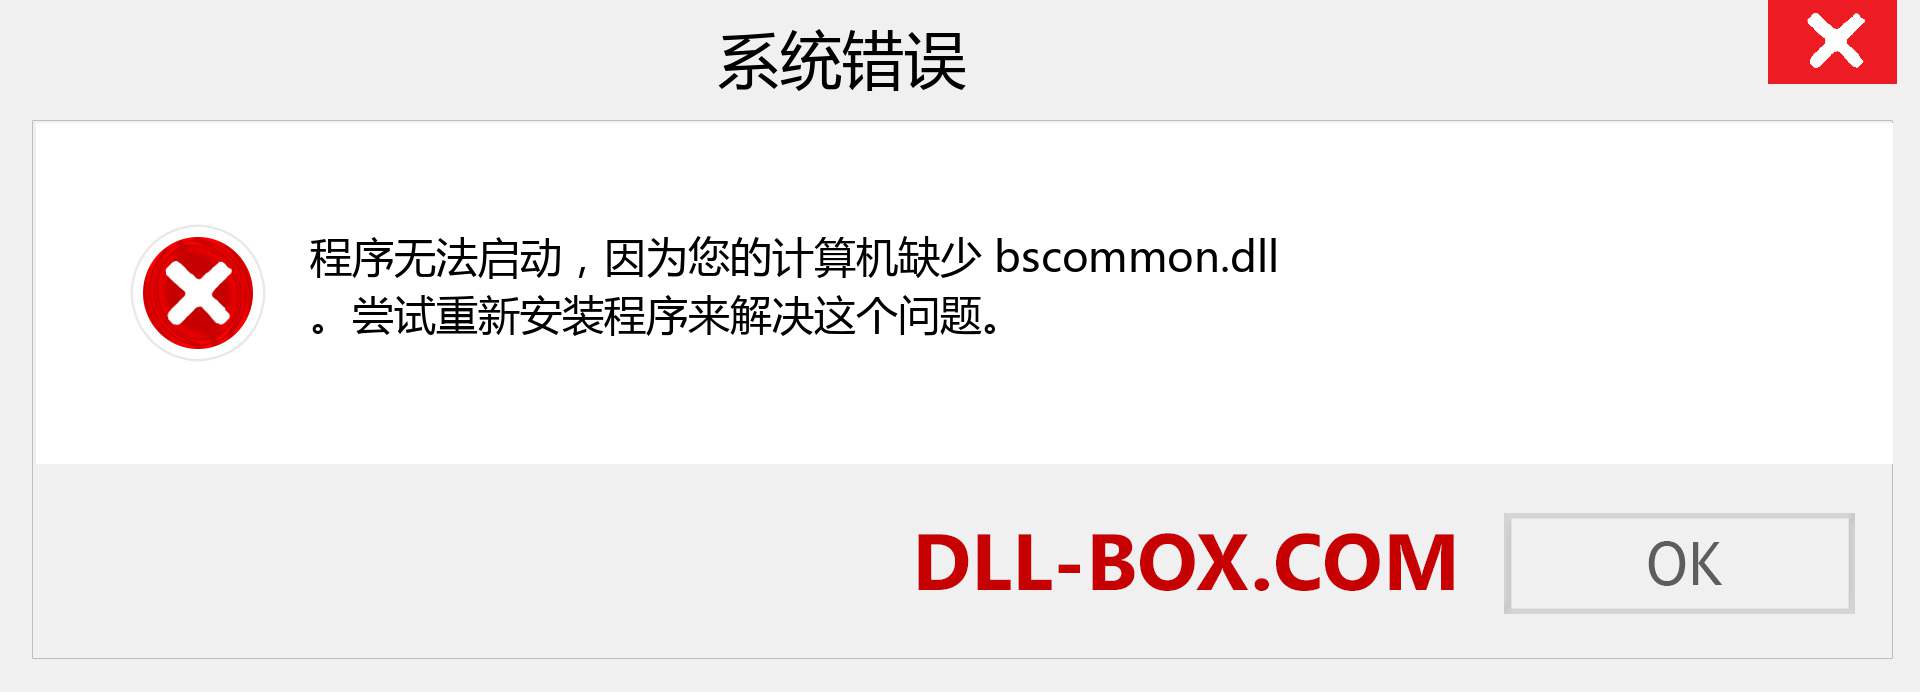 bscommon.dll 文件丢失？。 适用于 Windows 7、8、10 的下载 - 修复 Windows、照片、图像上的 bscommon dll 丢失错误